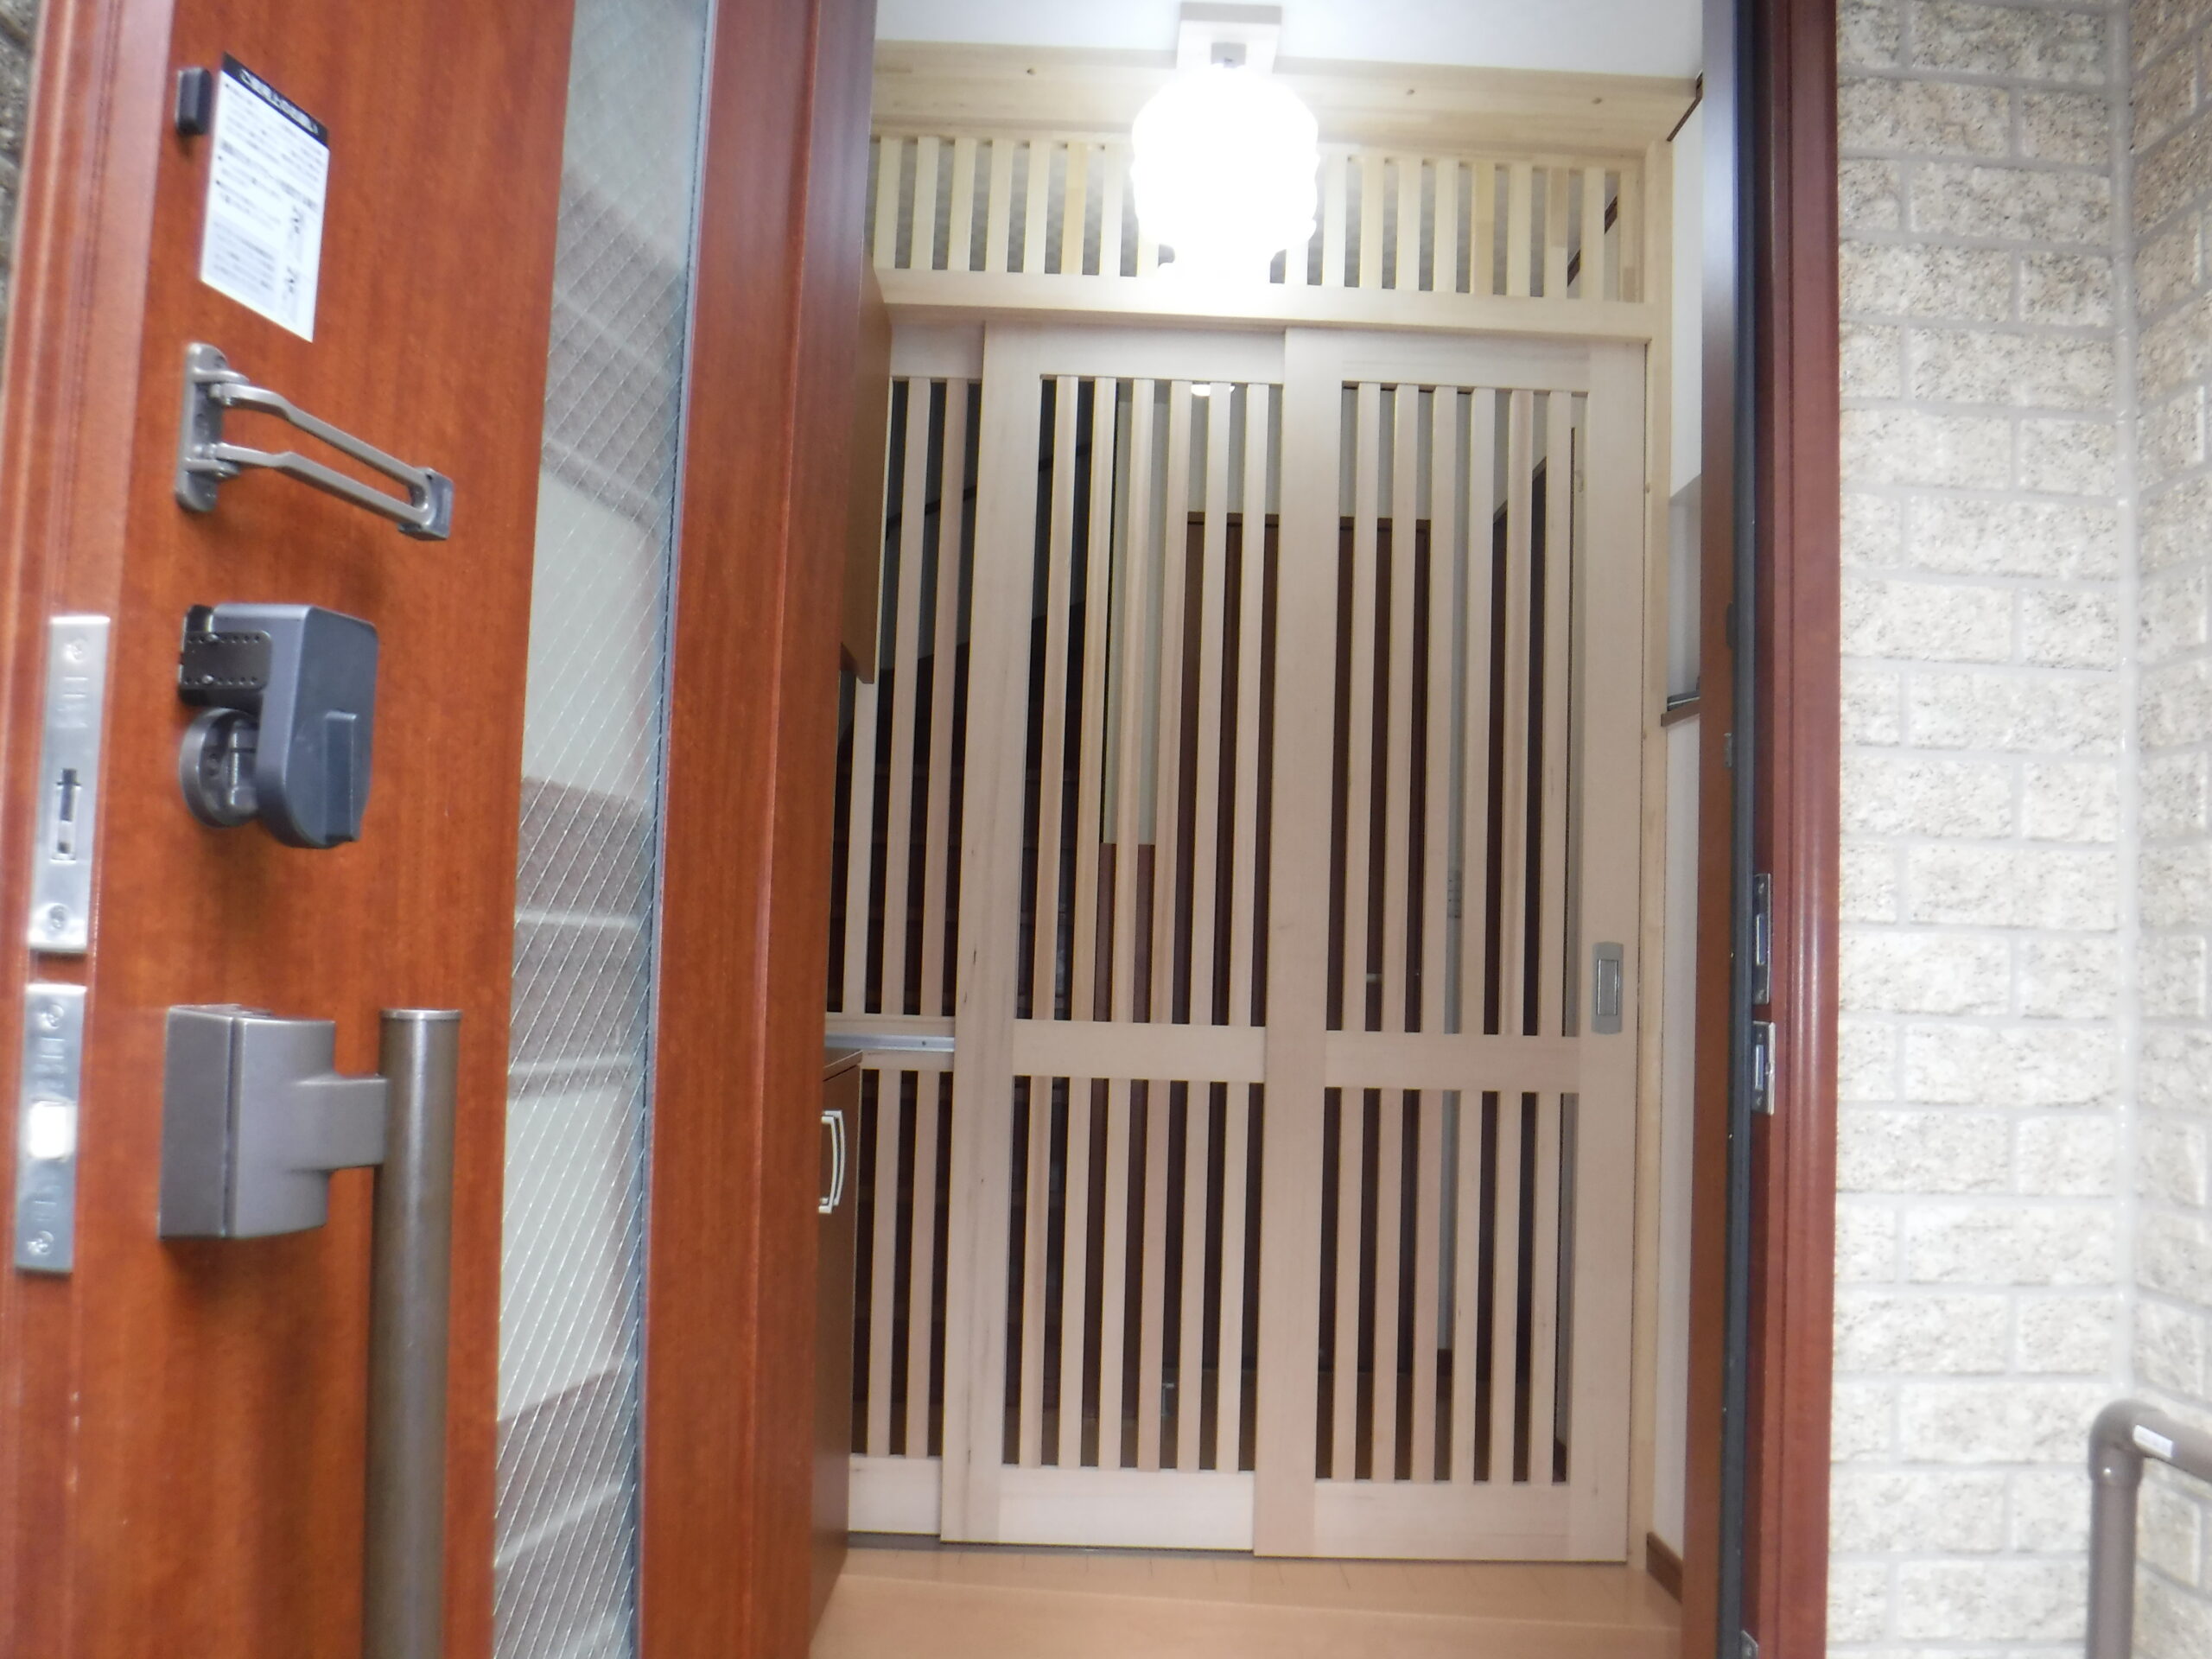 東京都墨田区F様邸で猫ちゃんの玄関脱走防止3枚扉を取り付けました。